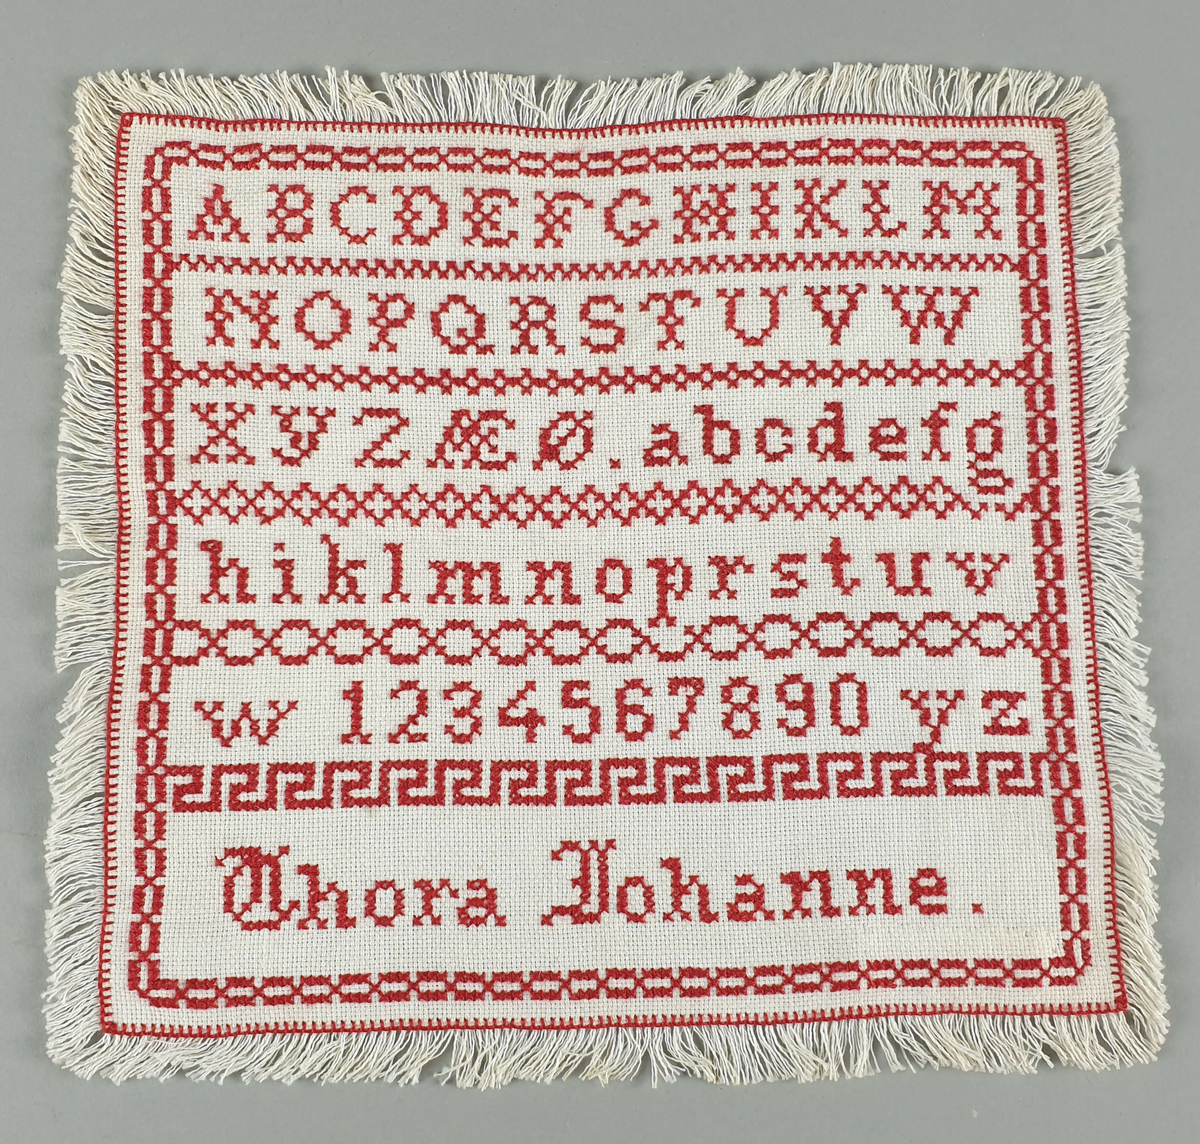 Hvit navneduk i bomull, med rødt broderi av alfabet, tall og egennavn. Border mellom hver linje.